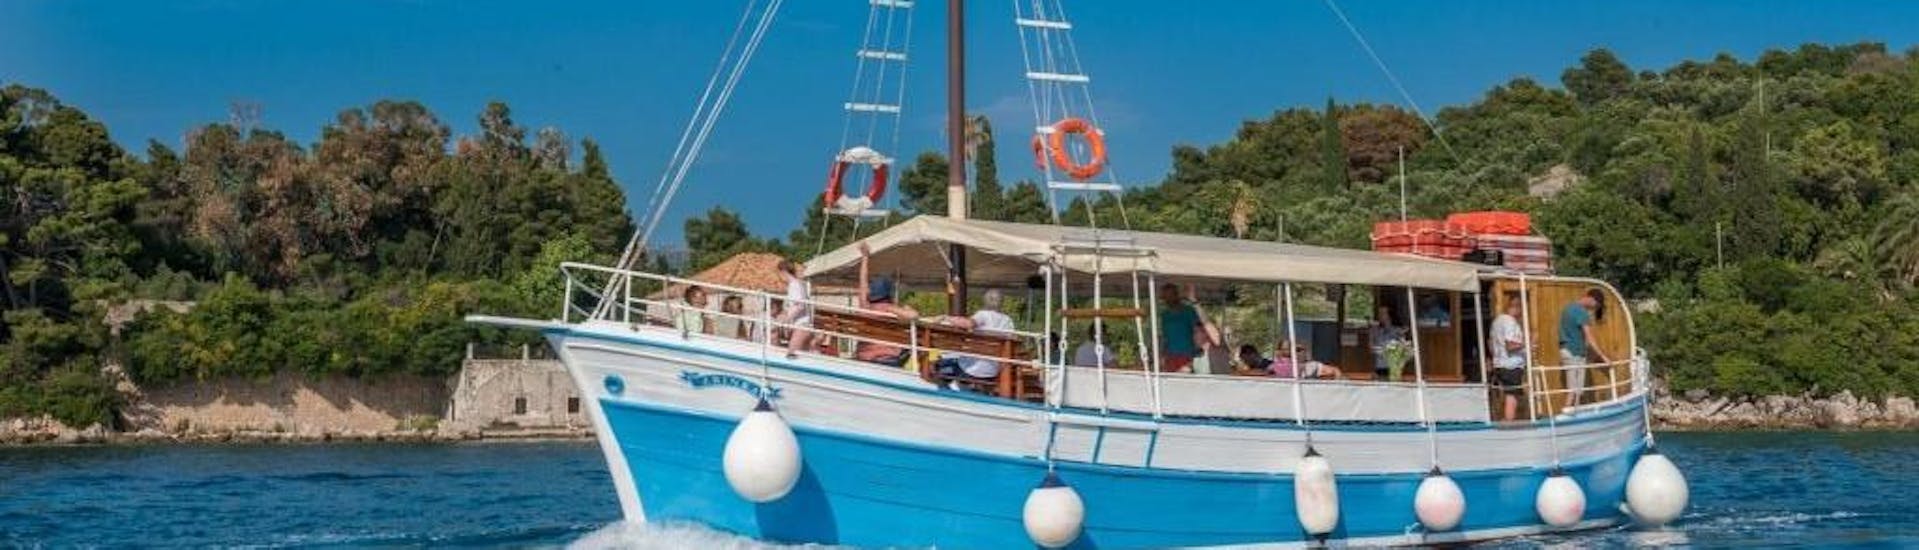 Foto van de boot van Dubrovnik Islands Tours die wordt gebruikt voor de groepsreis naar de Elaphiti eilanden.